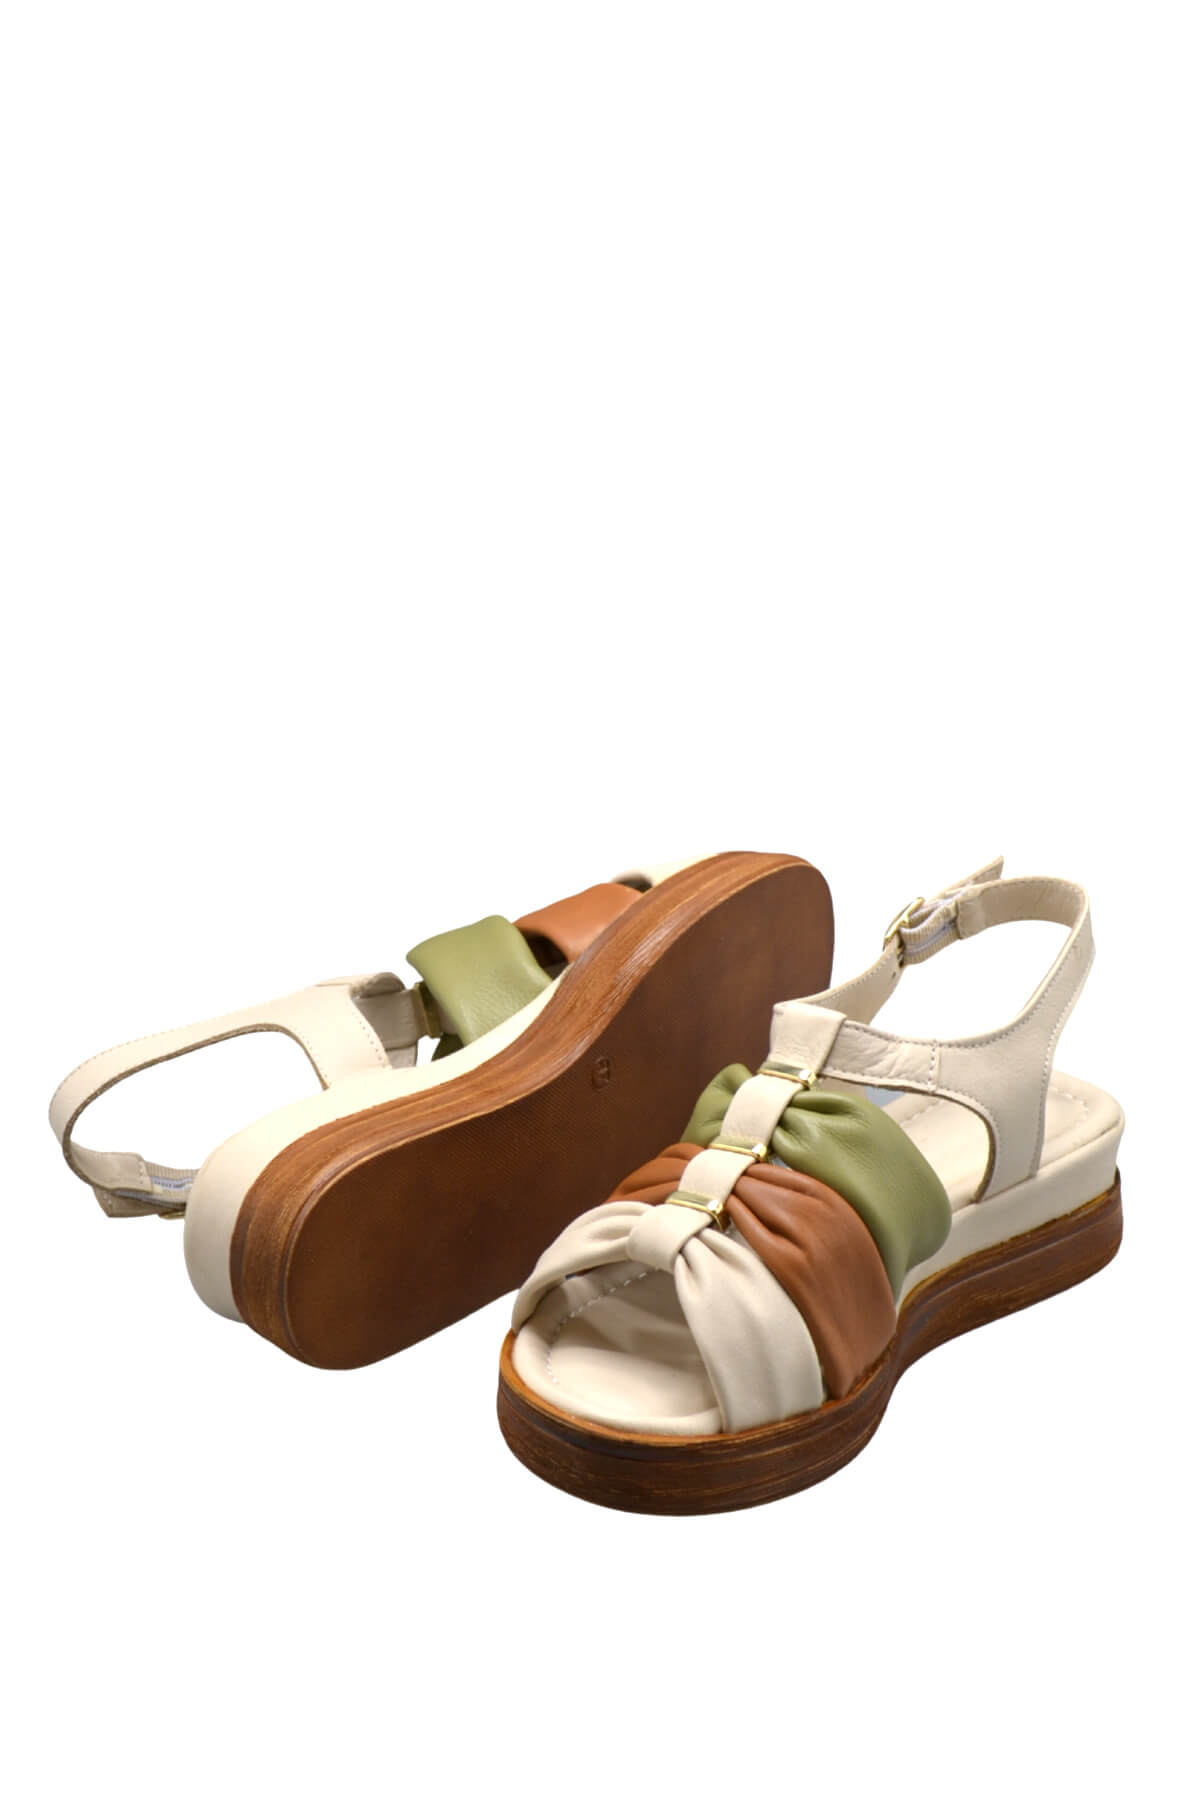 Kadın Comfort Deri Sandalet Bej 2216412Y - Thumbnail